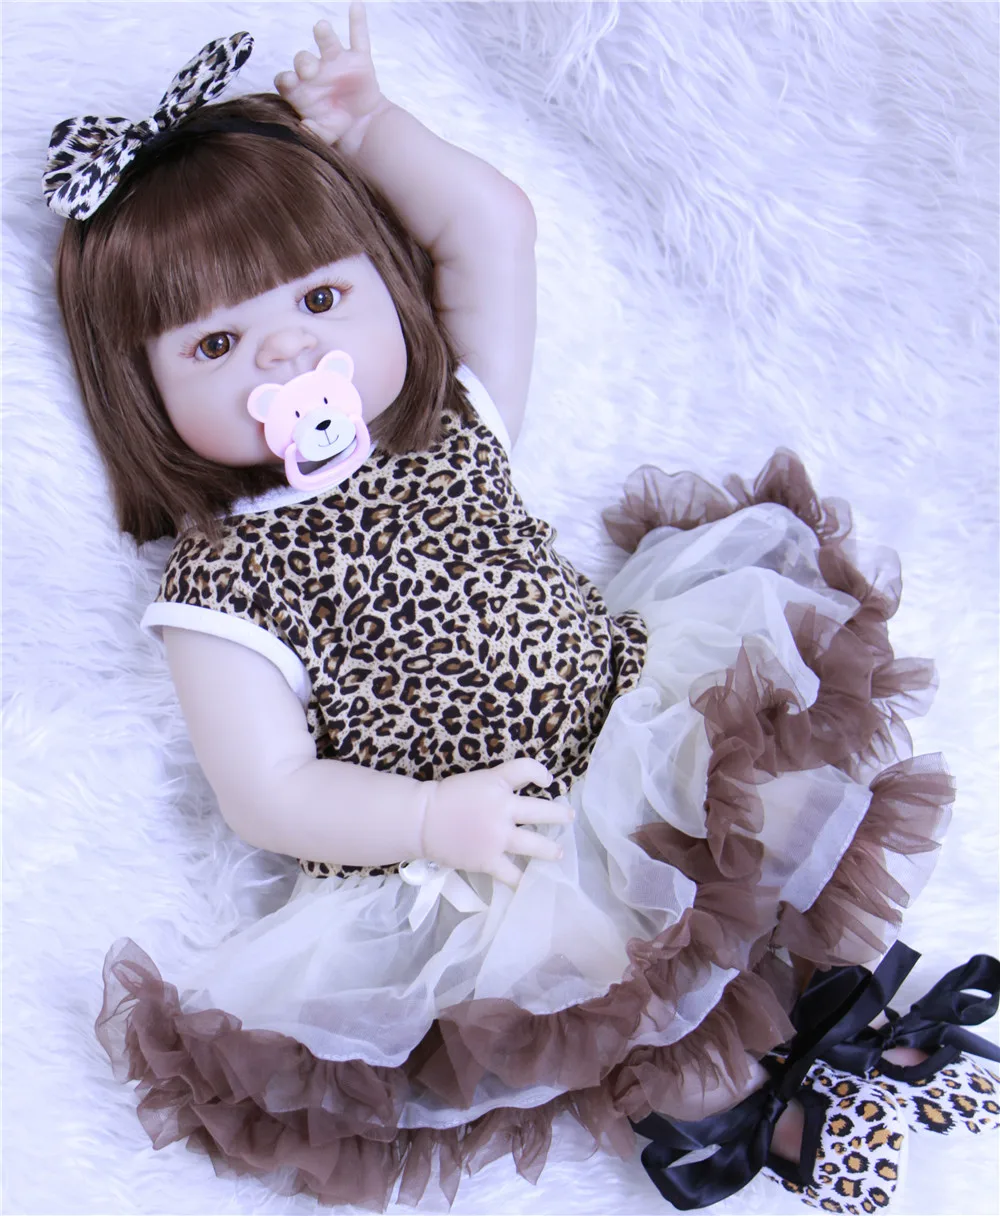 

22 дюймов 55 см Полный Силиконовые Винил принцесса для малышей куклы lol оригинальный для девочек подарок на день рождения подарок ребенку игр...